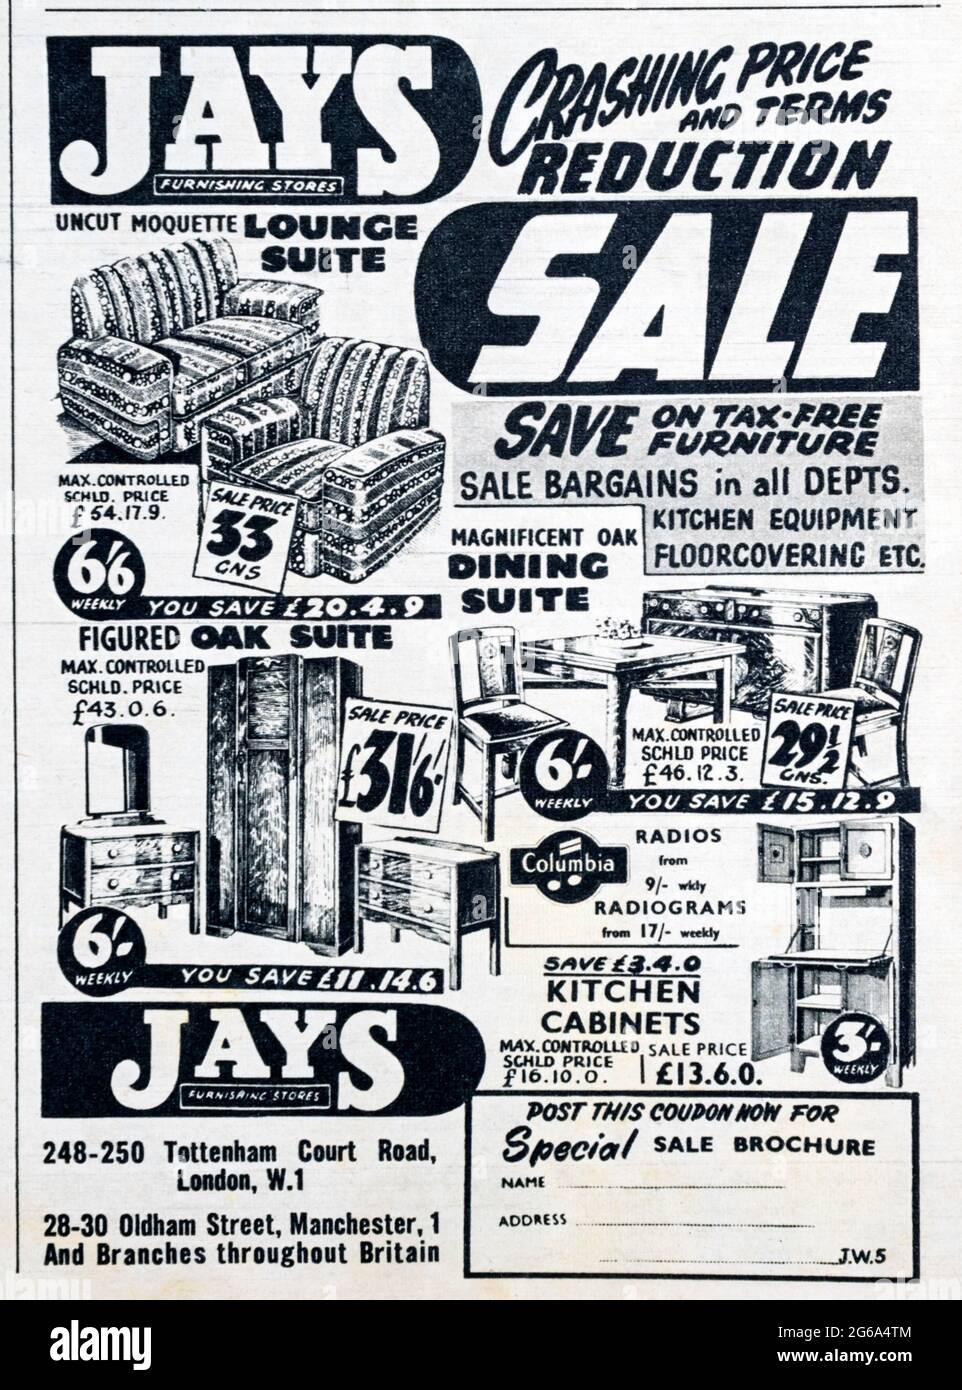 Eine Zeitschriftenanzeige aus den 1950er Jahren für Jays Furnishing Stores. Stockfoto